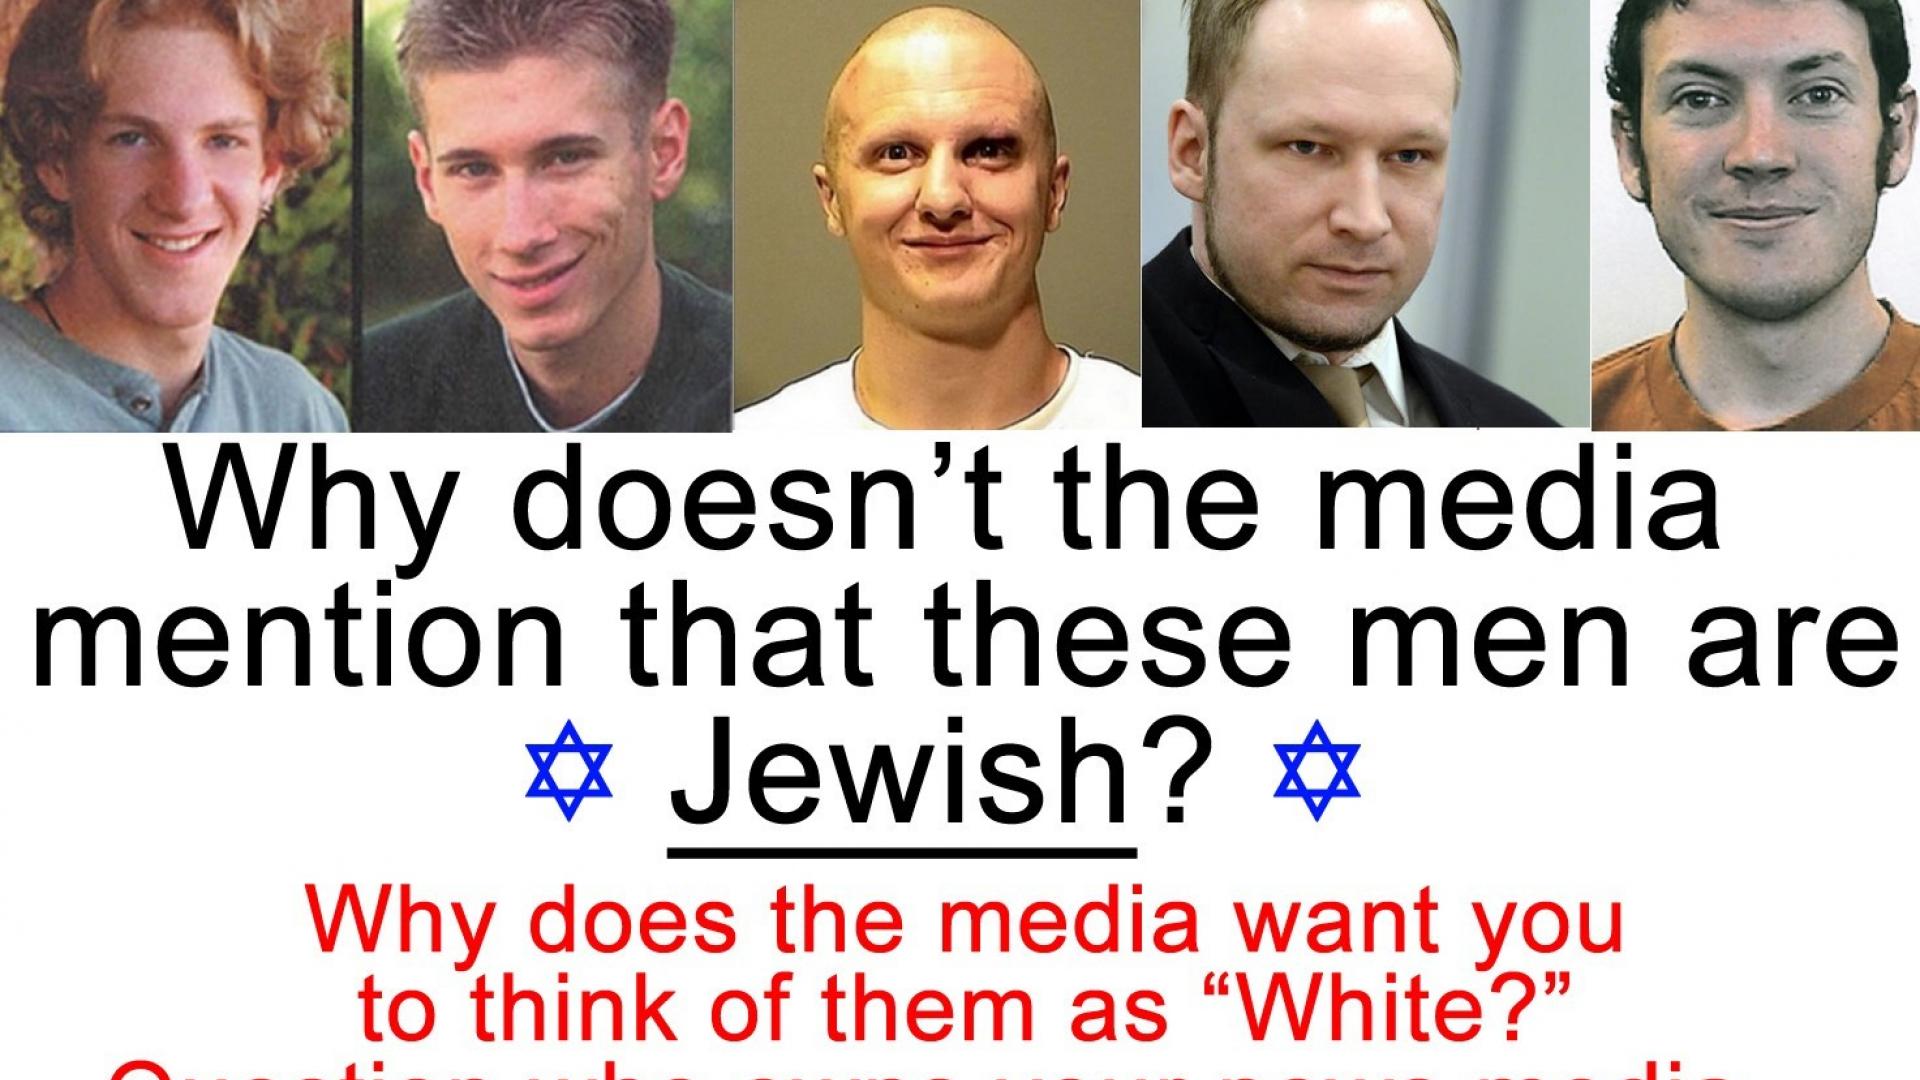 Jew racism media lie serial killer wallpaper HD 1920x1080.